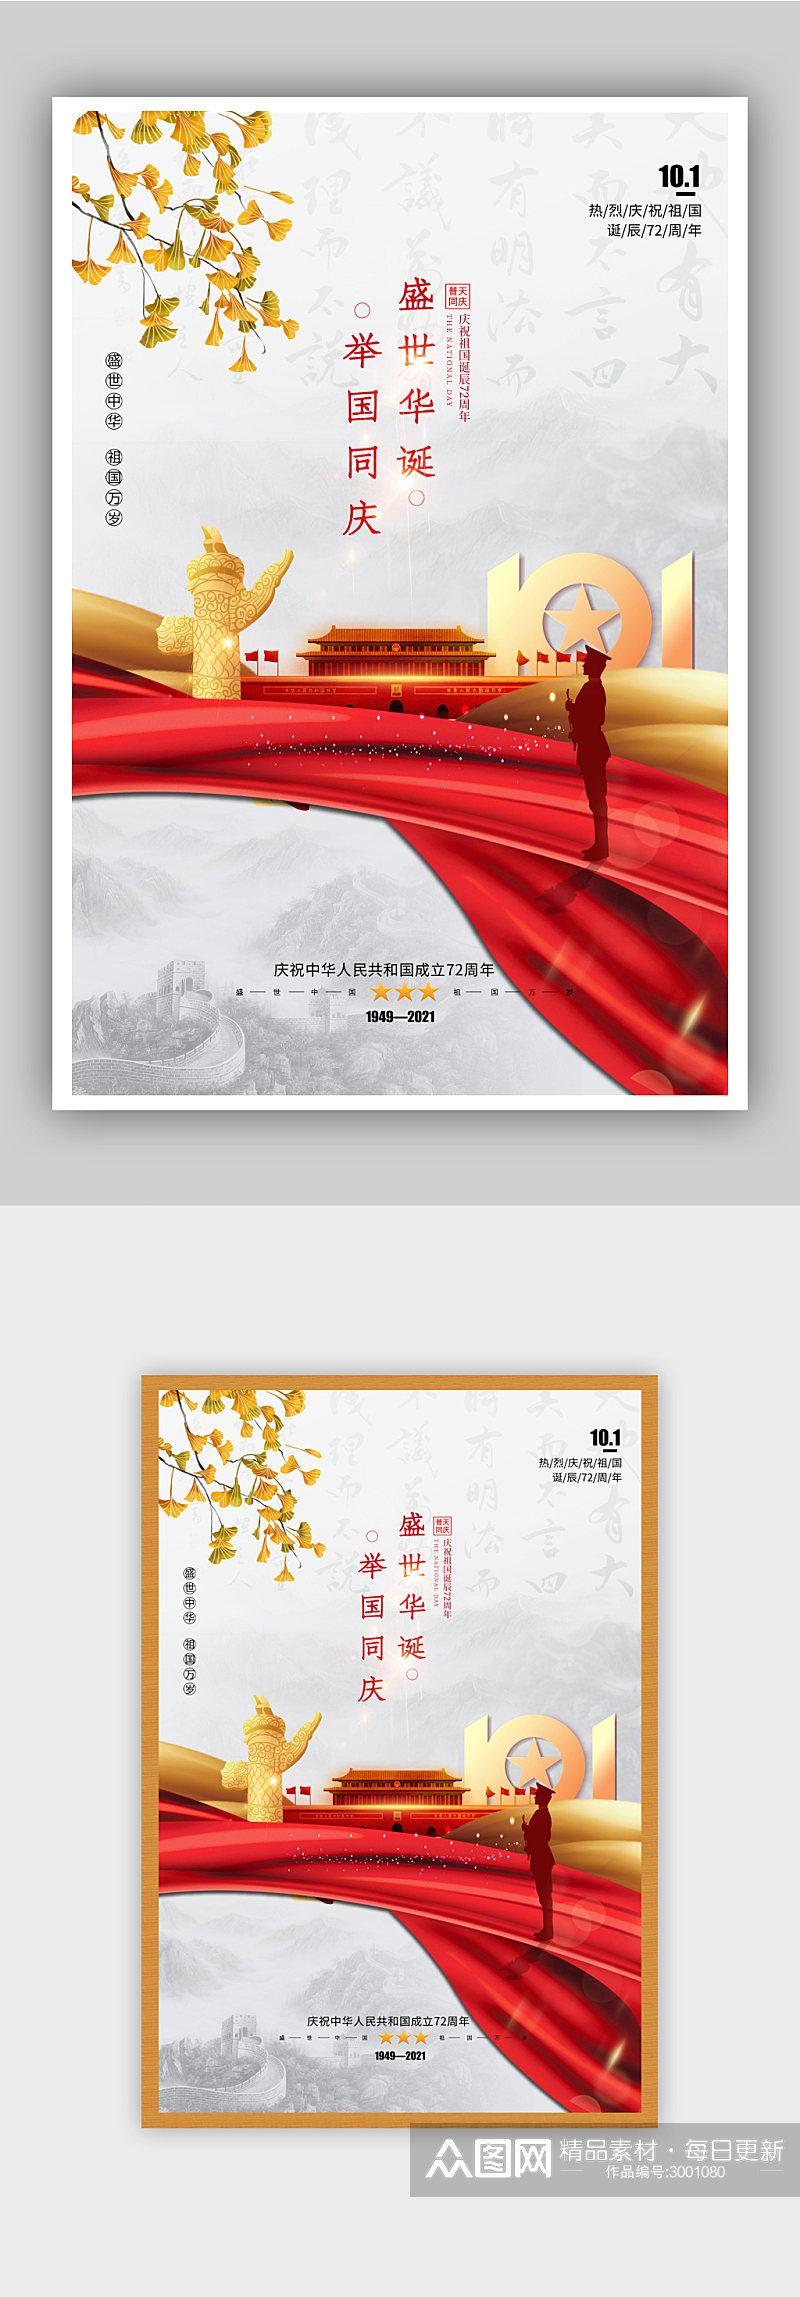 国庆72周年节日海报素材